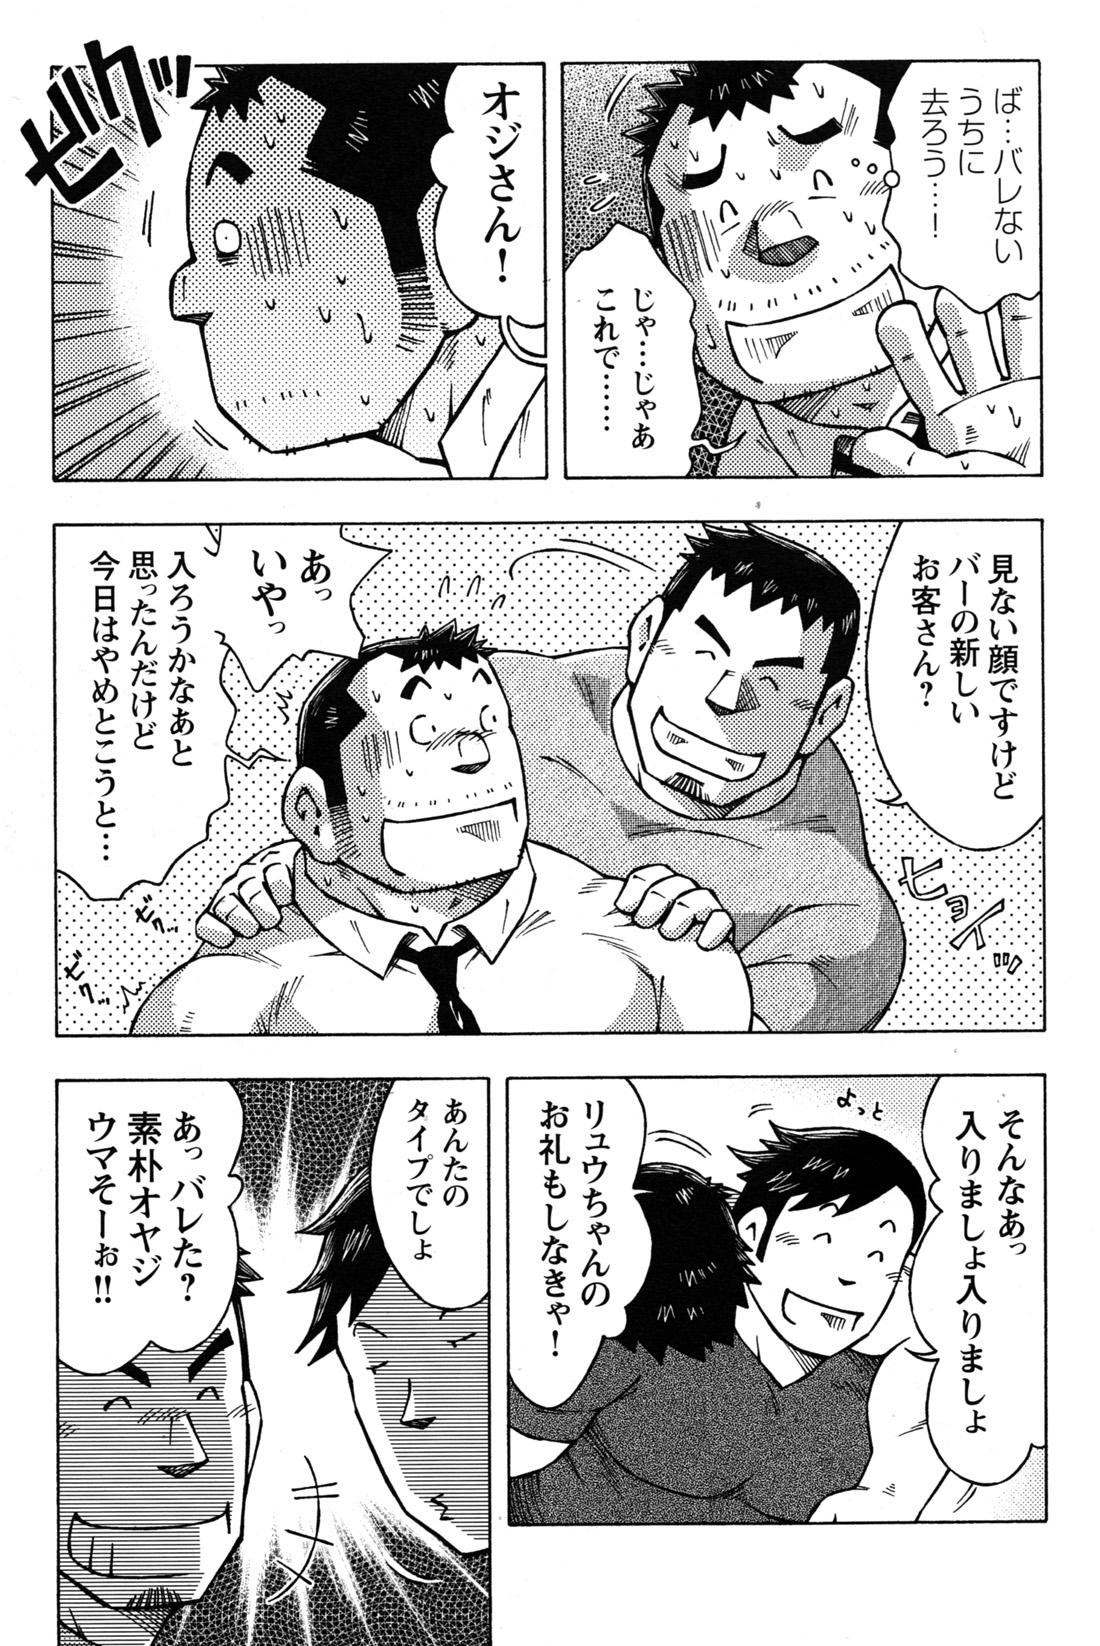 Comic G-men Gaho No.09 Gacchibi Zeme 129